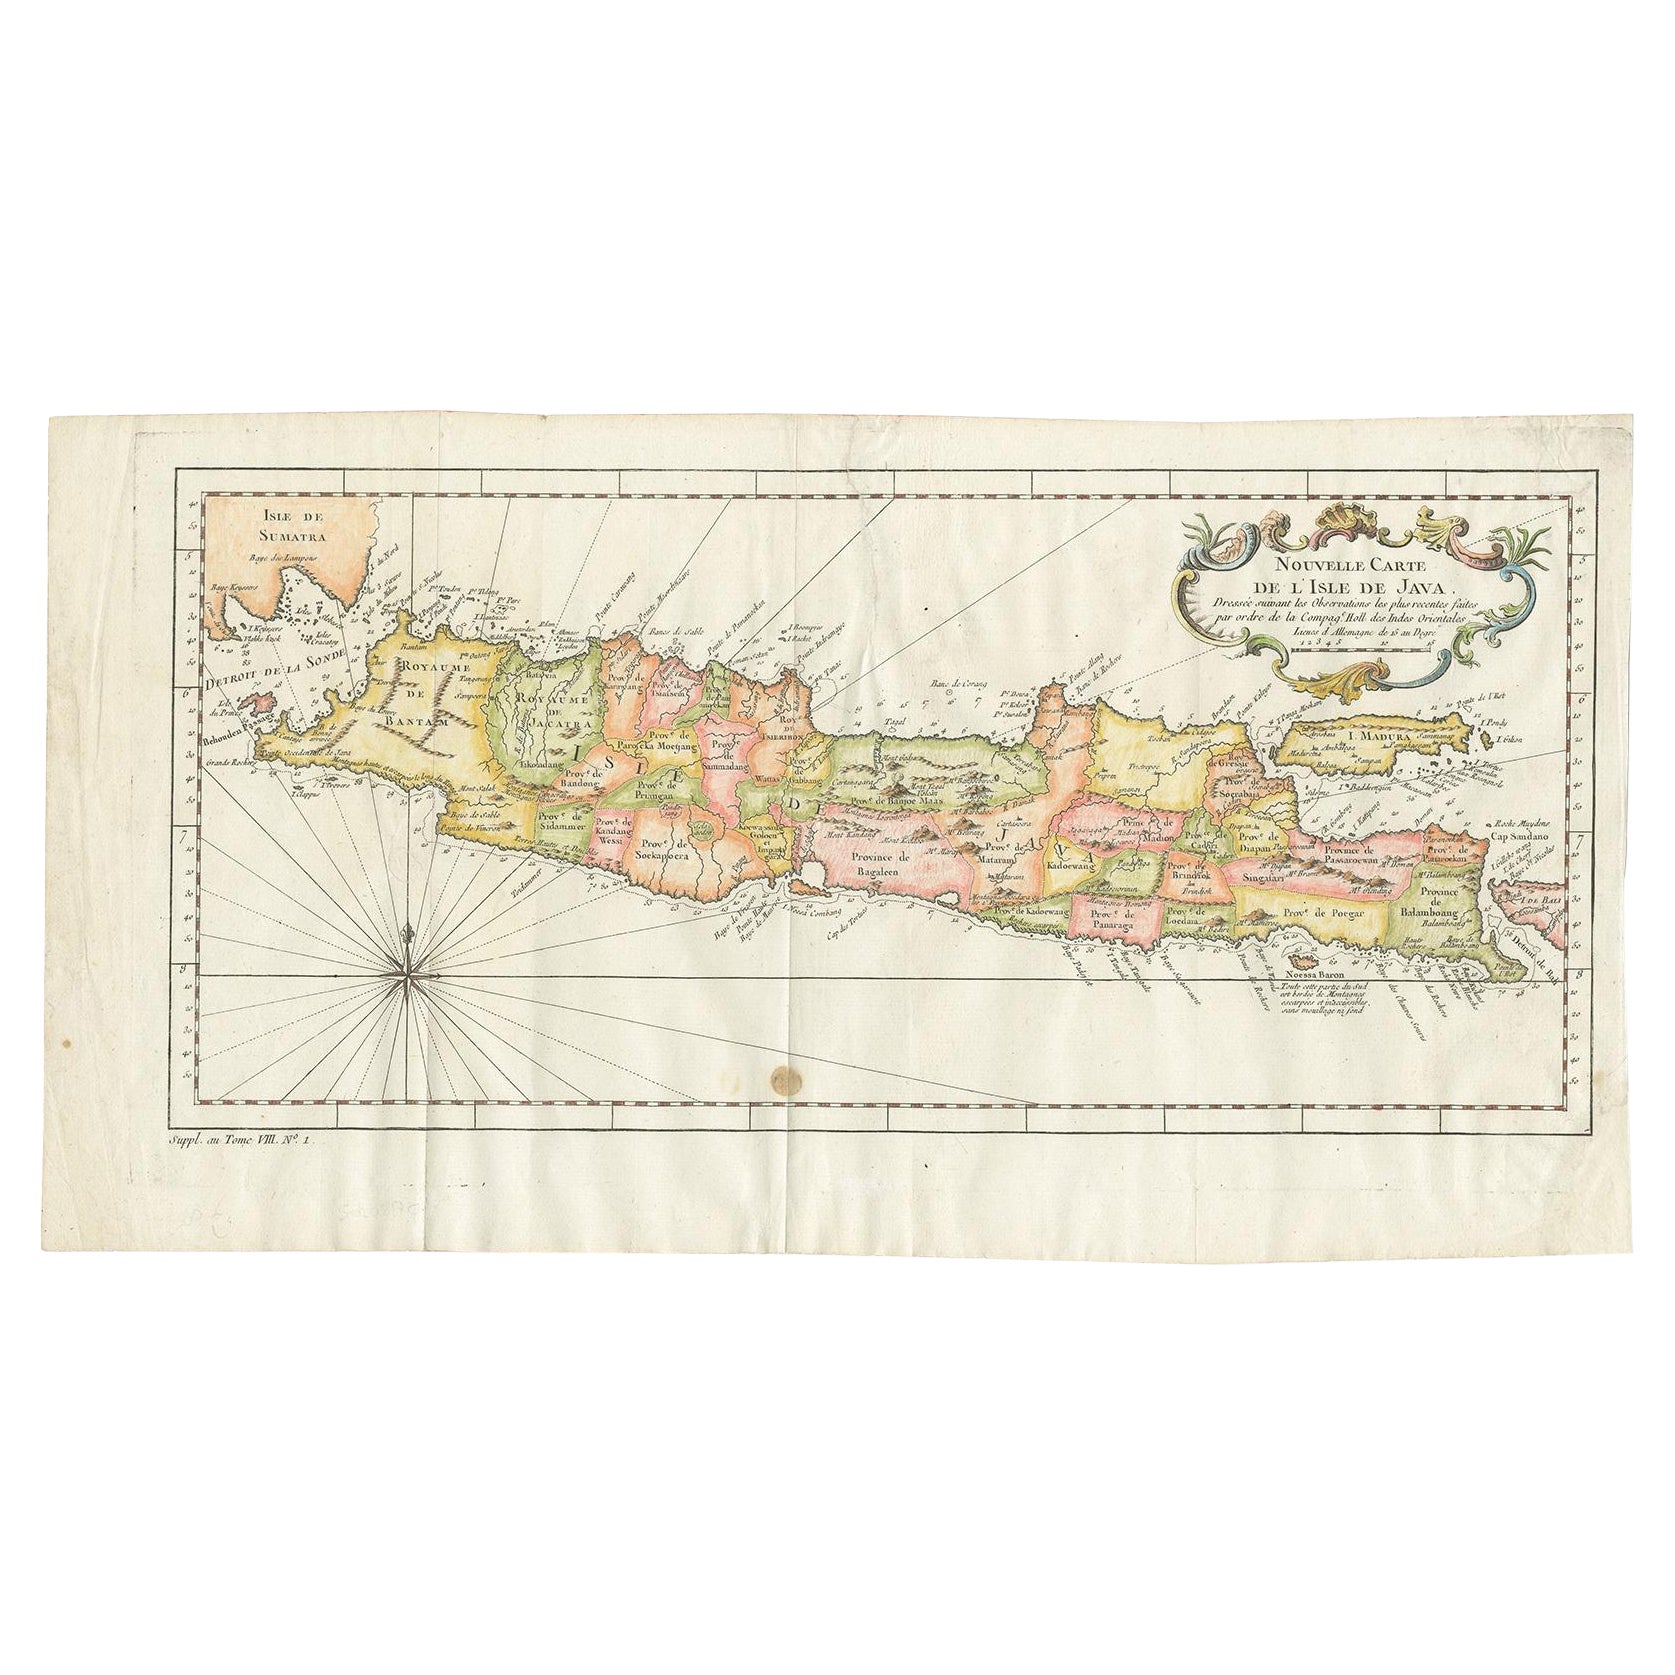 Carte ancienne colorée de l'île de Java et de Madura, Indonésie, vers 1760